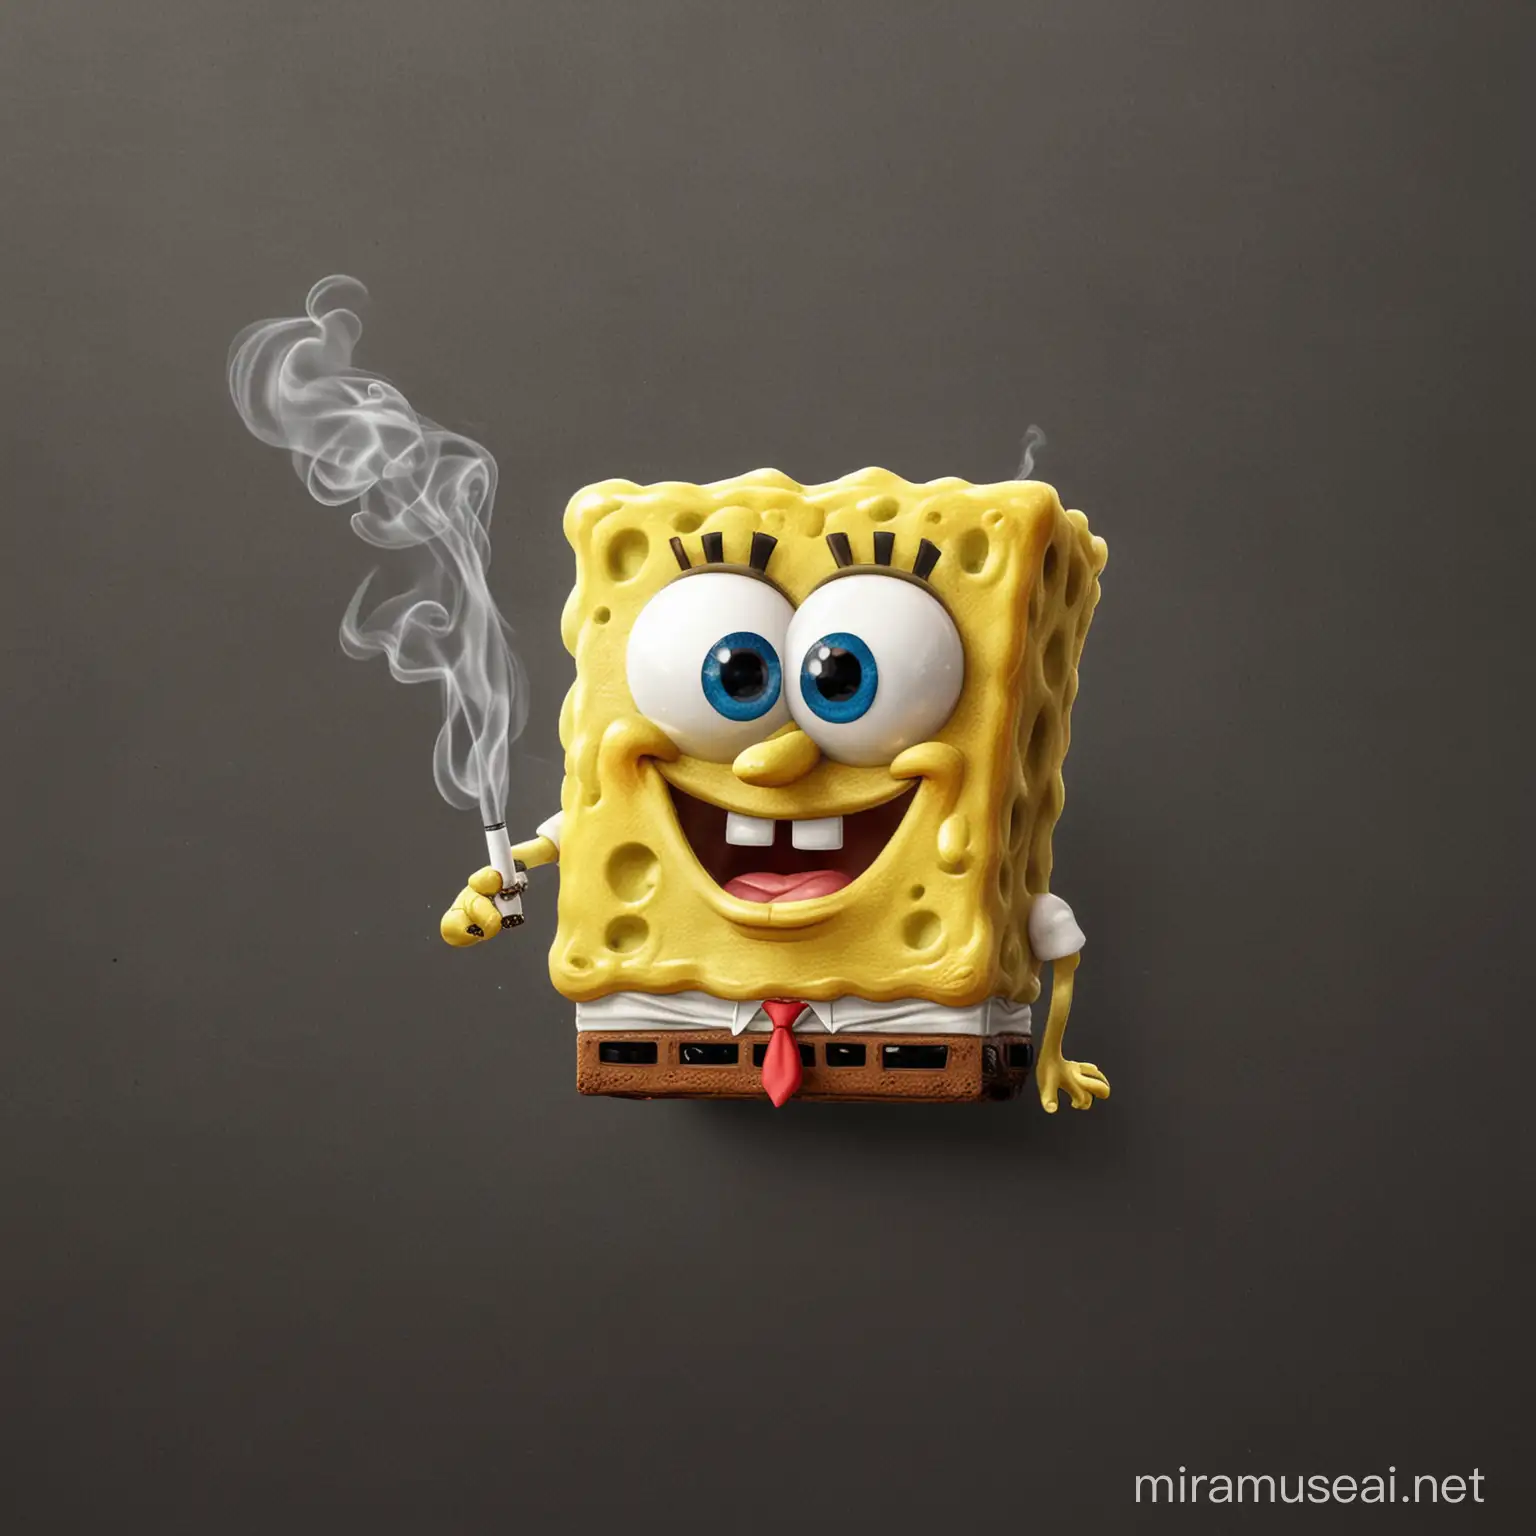 SpongeBob SquarePants Character Enjoying a Relaxing Smoke